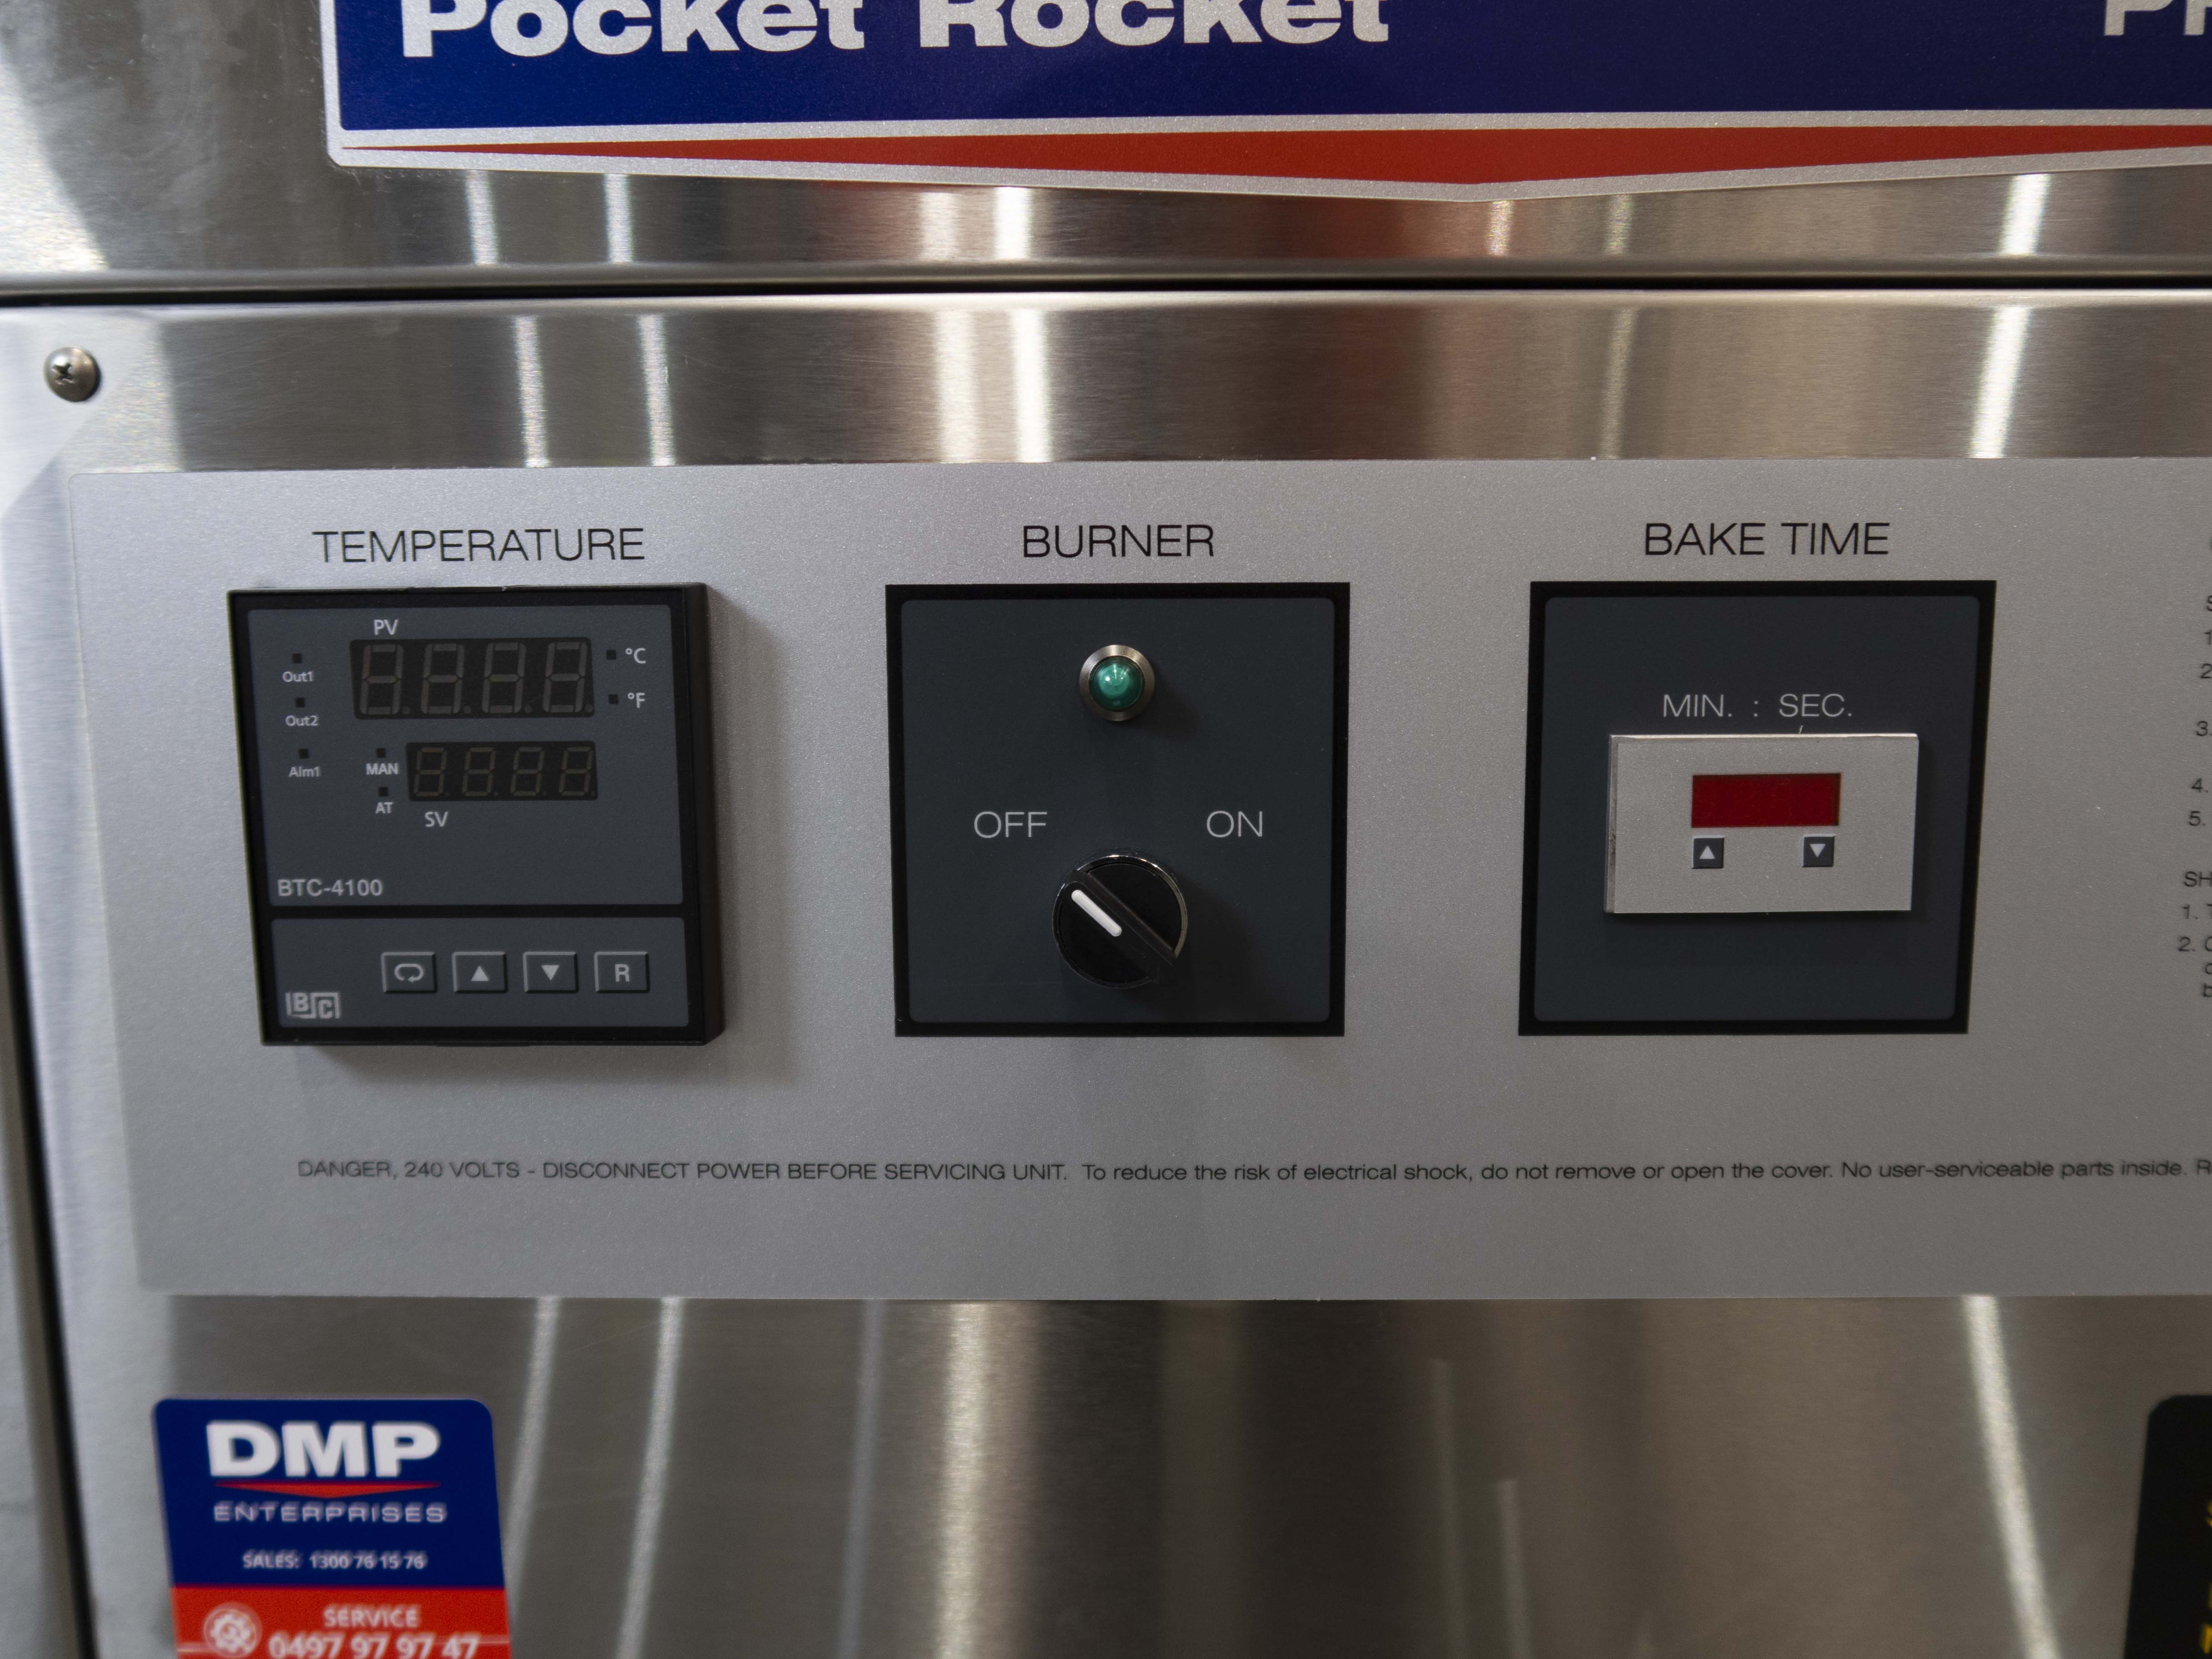 Thumbnail - Pocket Rocket PR2638 Conveyor Pizza Oven